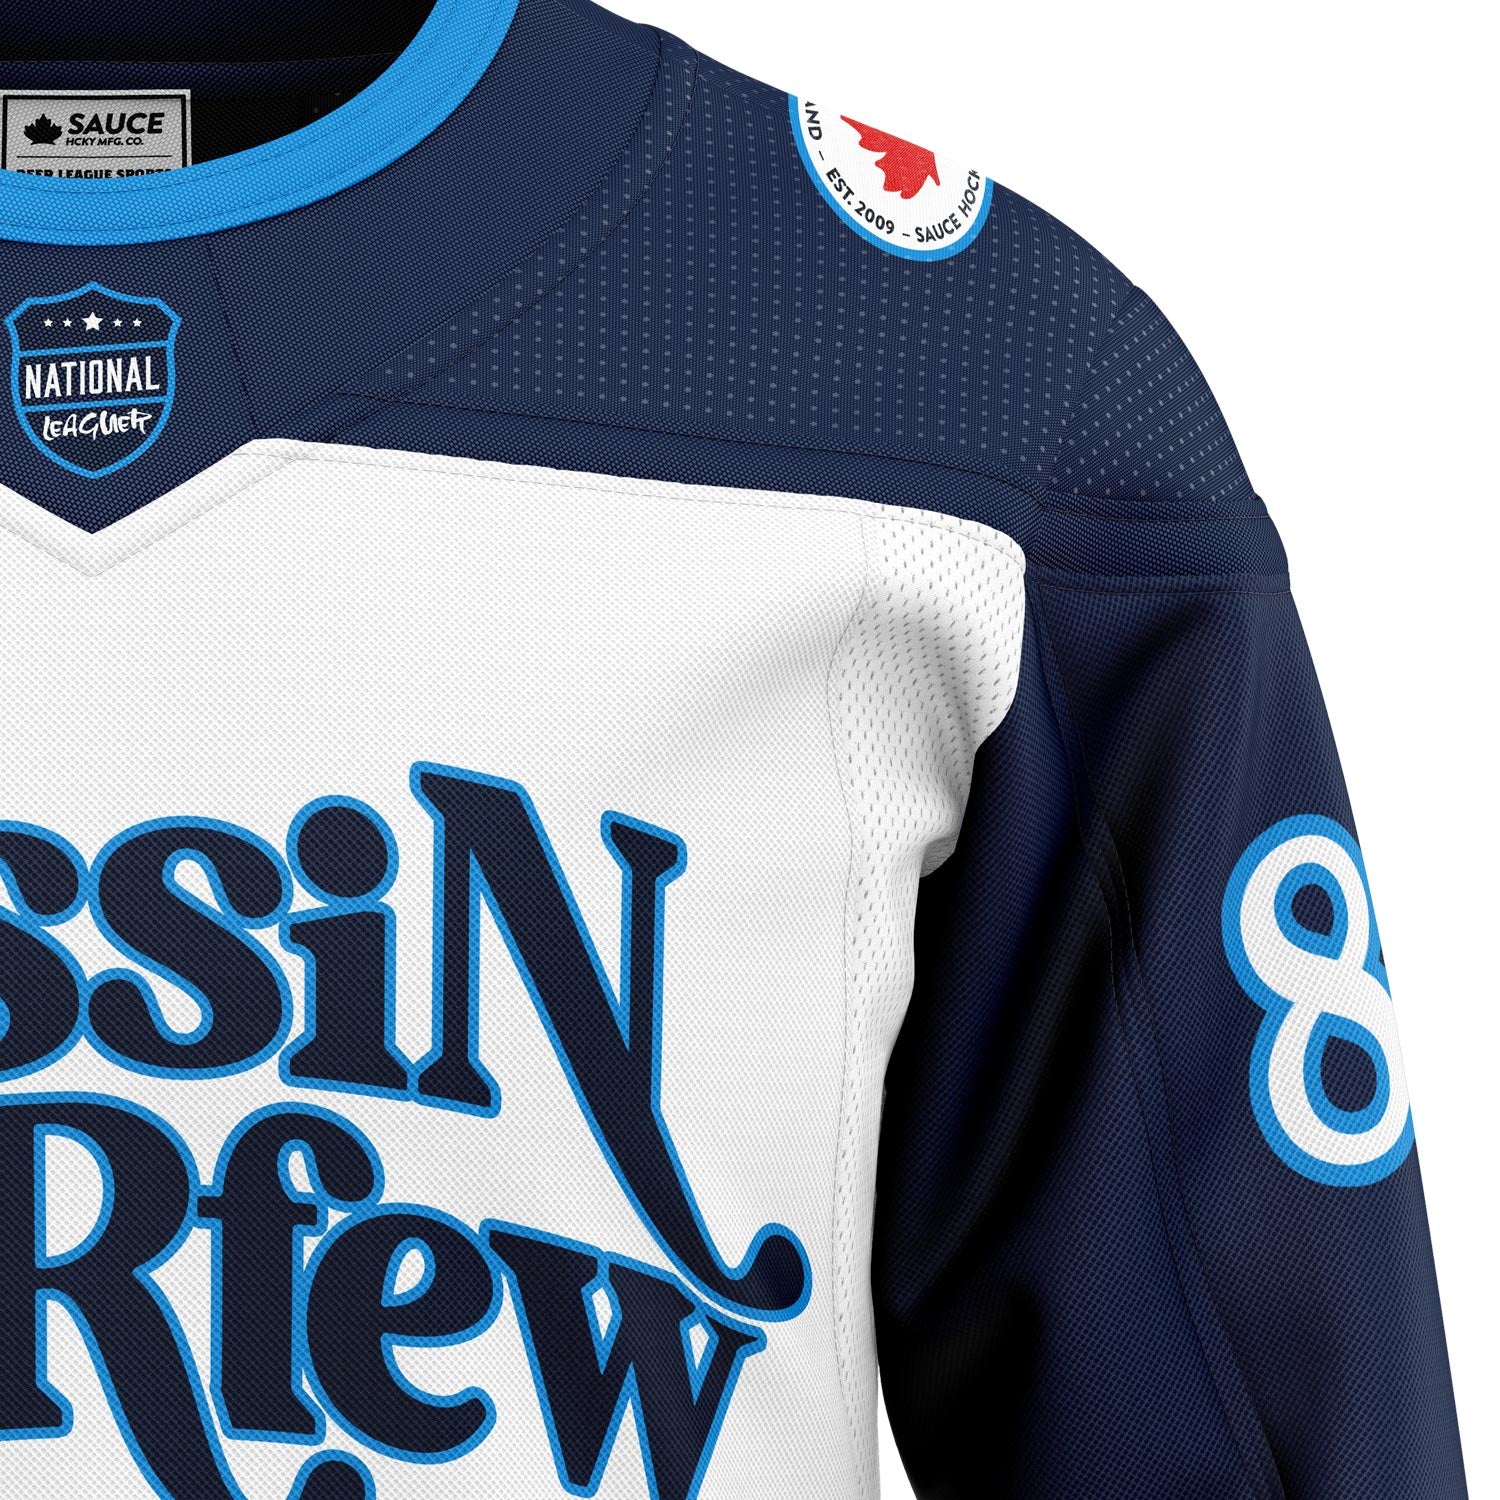 Missin Curfew on X: Best Retro #NHL All-Star Jerseys?? 1️⃣